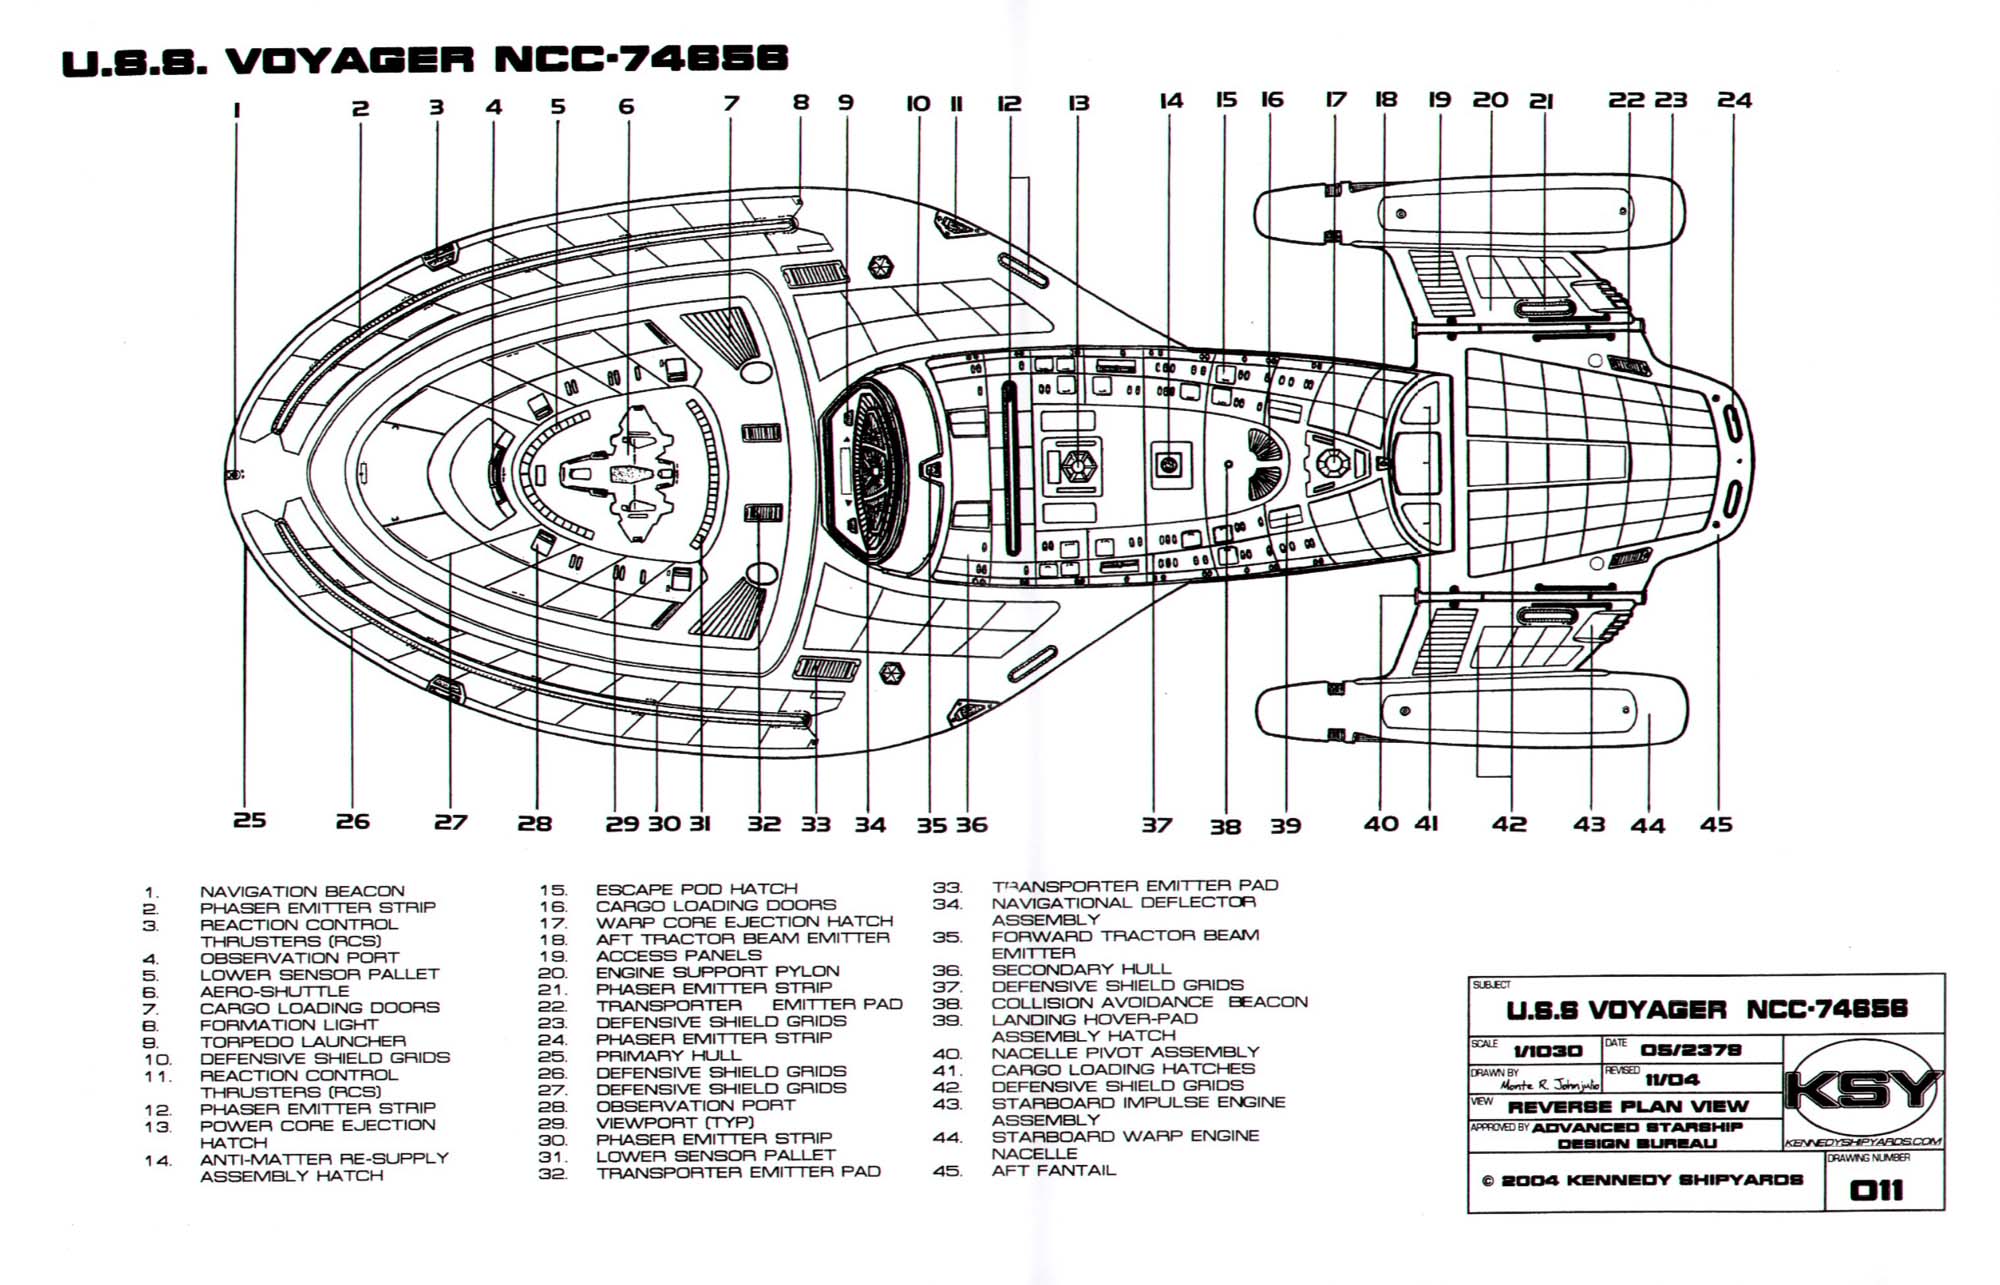 Star Trek Voyager Ship Layout